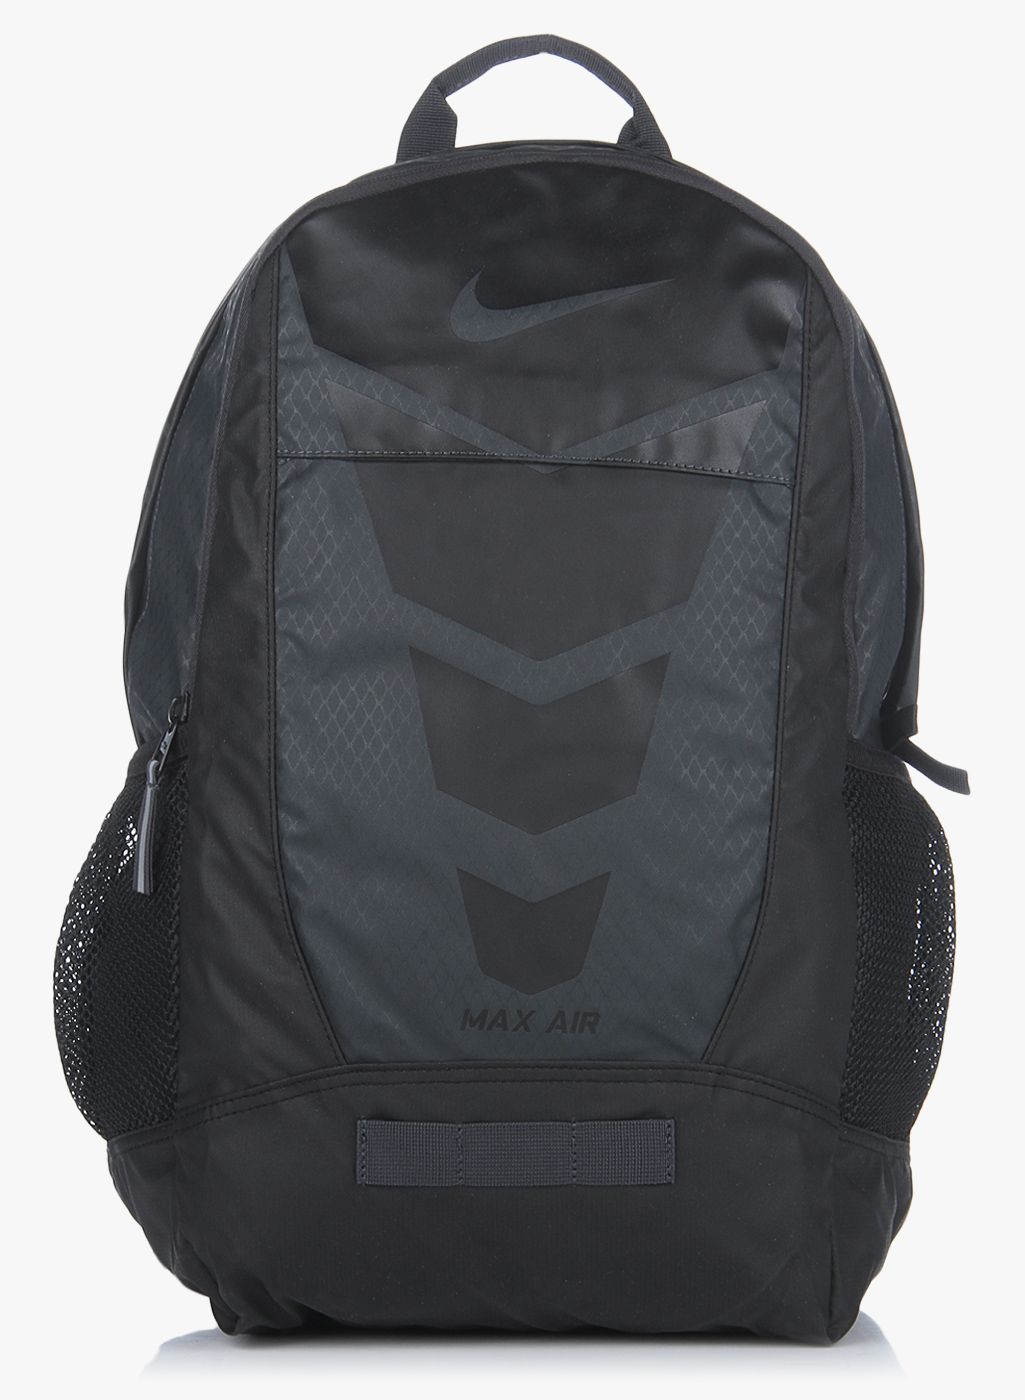 nike backpack max air